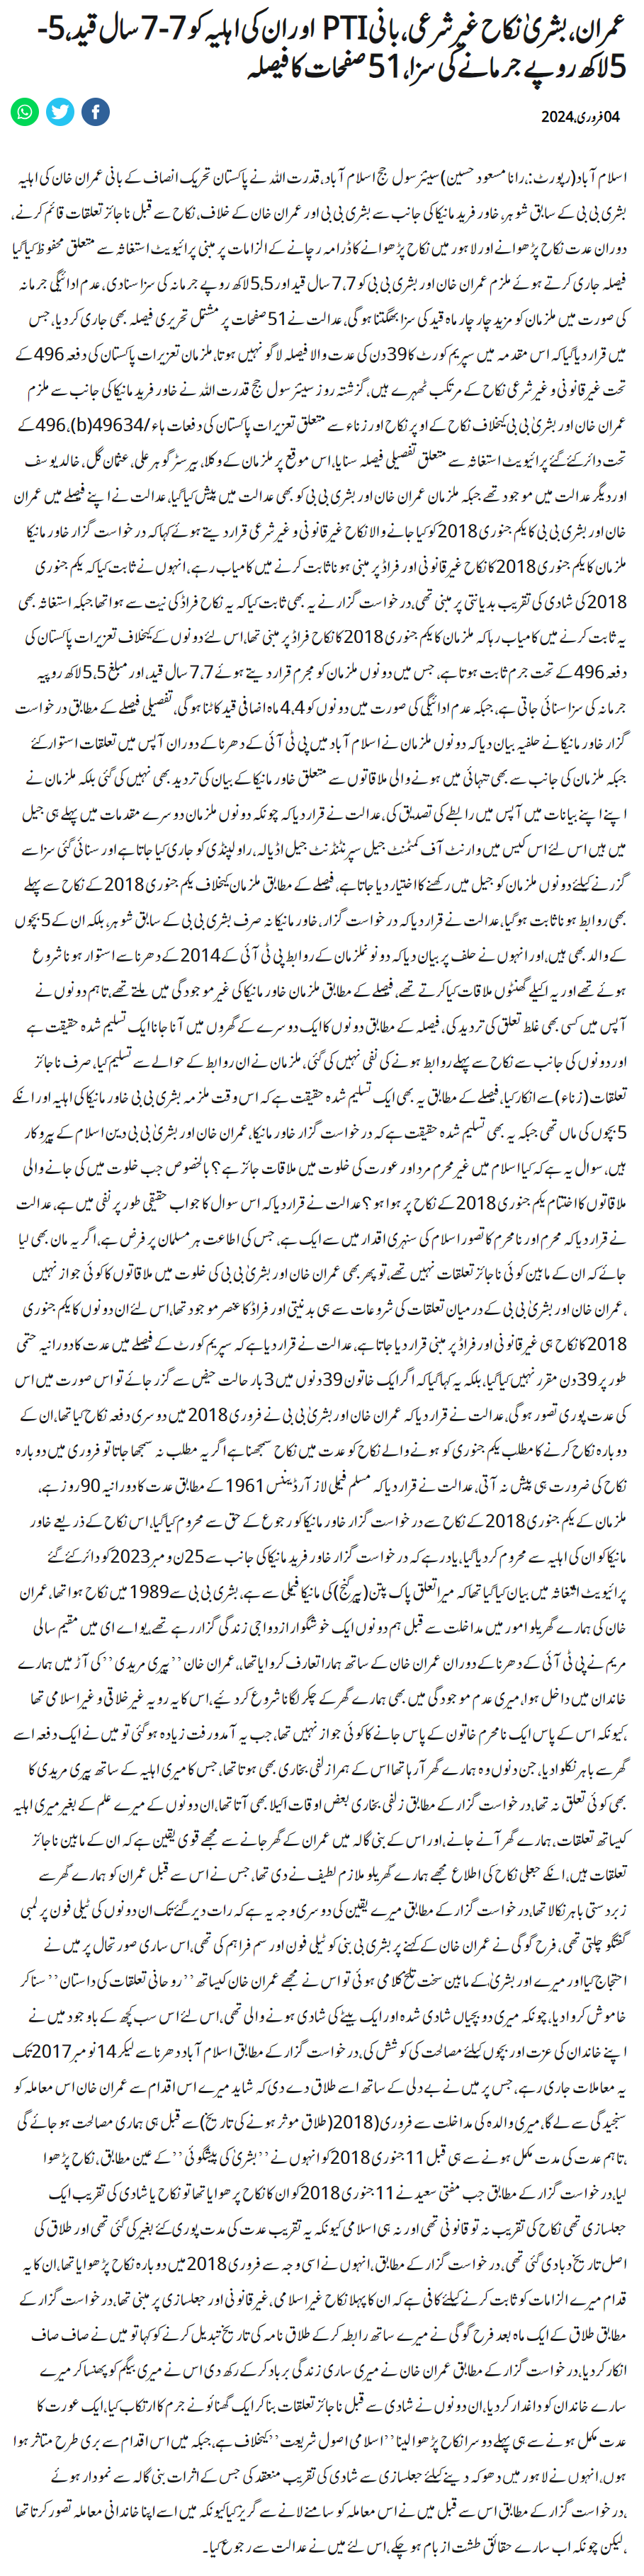 Imran Khan & Bushra Bibi Un-Islamic Nikah Case Detailed Judgement Jang News Urdu